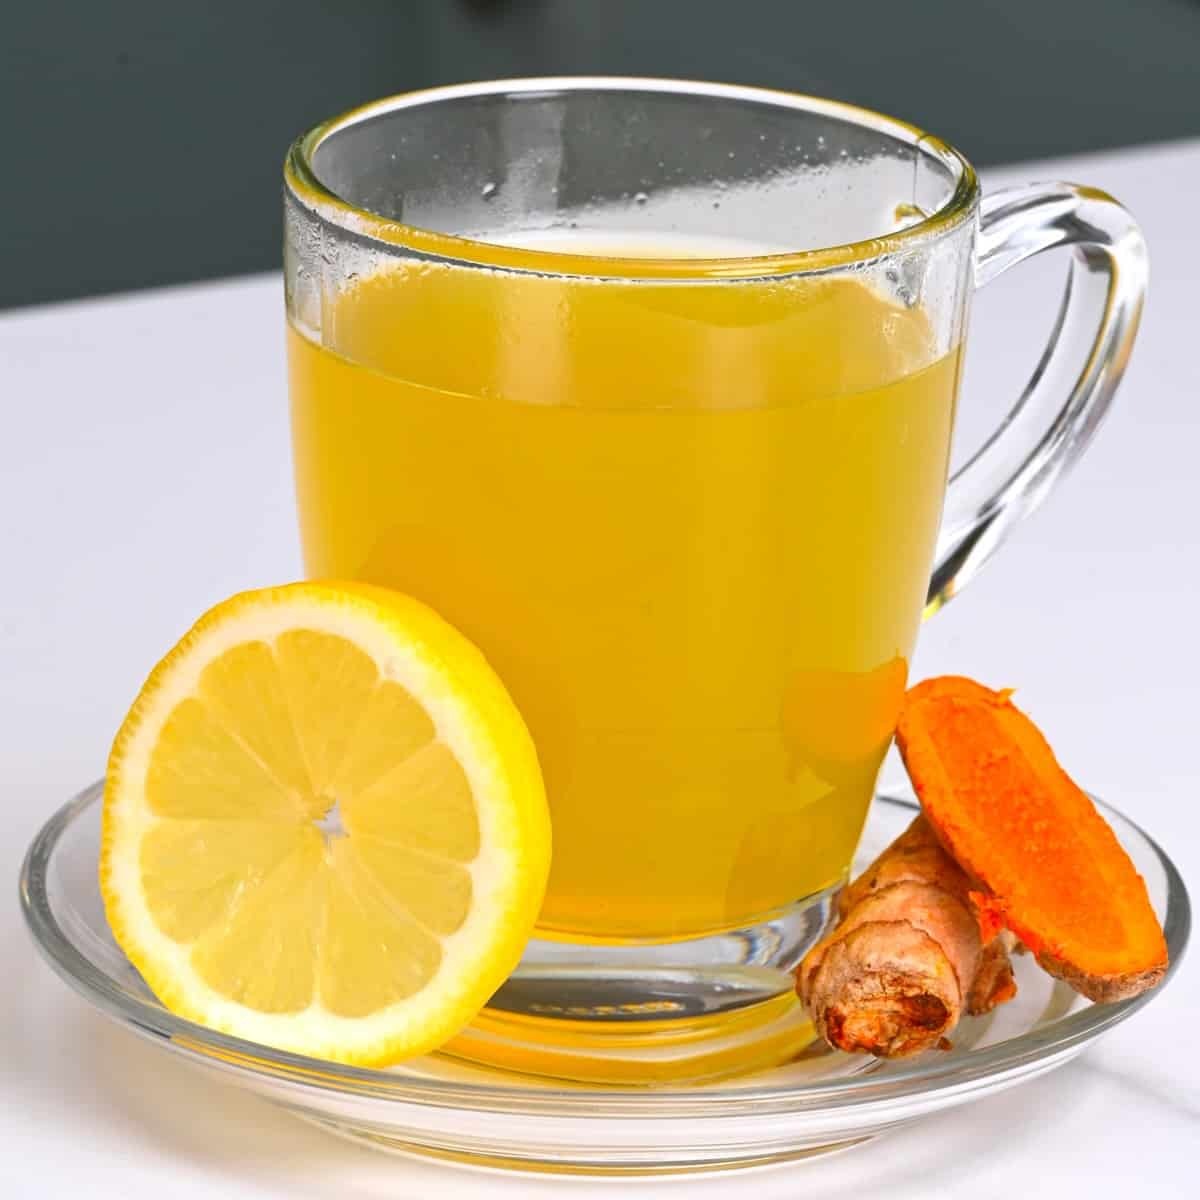 Health Tips: सर्दियों में बीमारियों से खुद को बचाने के लिए पीएं ये ड्रिंक, रहेंगे स्वस्थ और तंदुरुस्त...